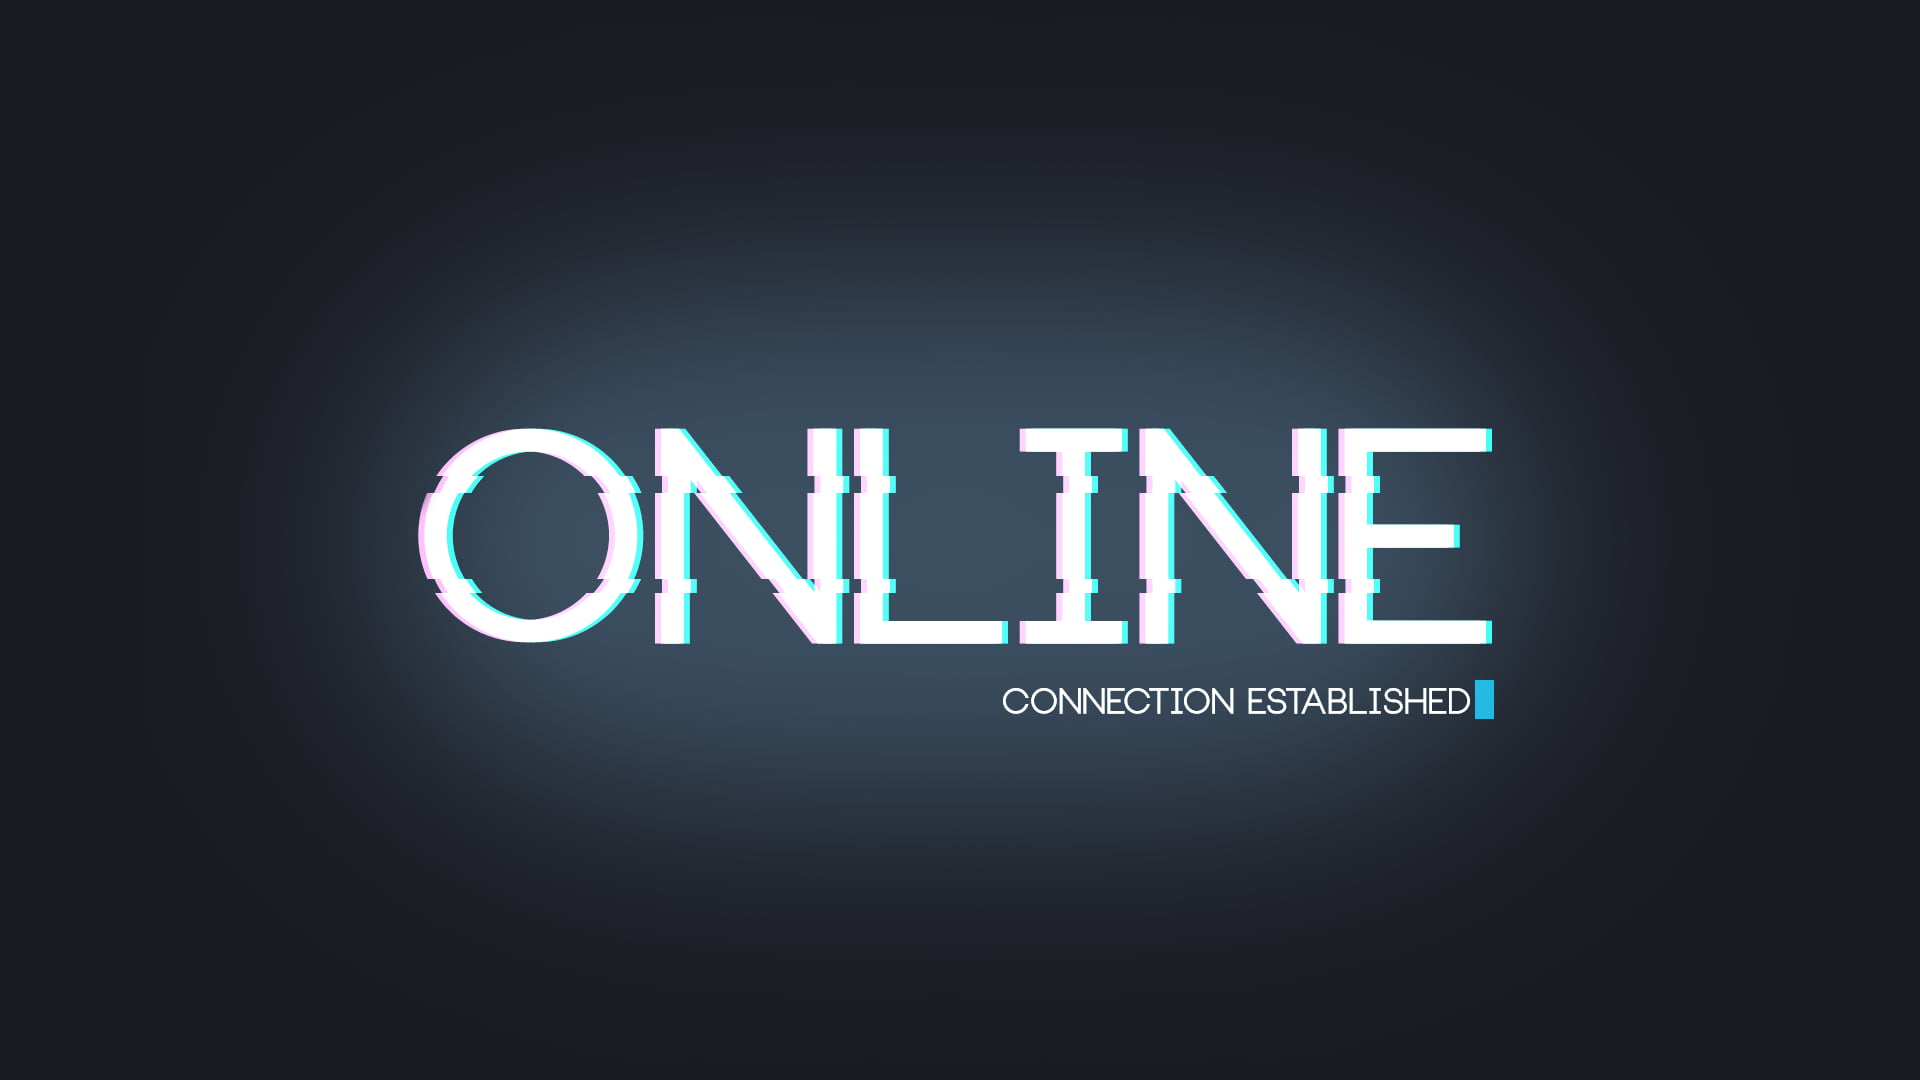 Online Connection Established logo HD wallpaper | Wallpaper Flare